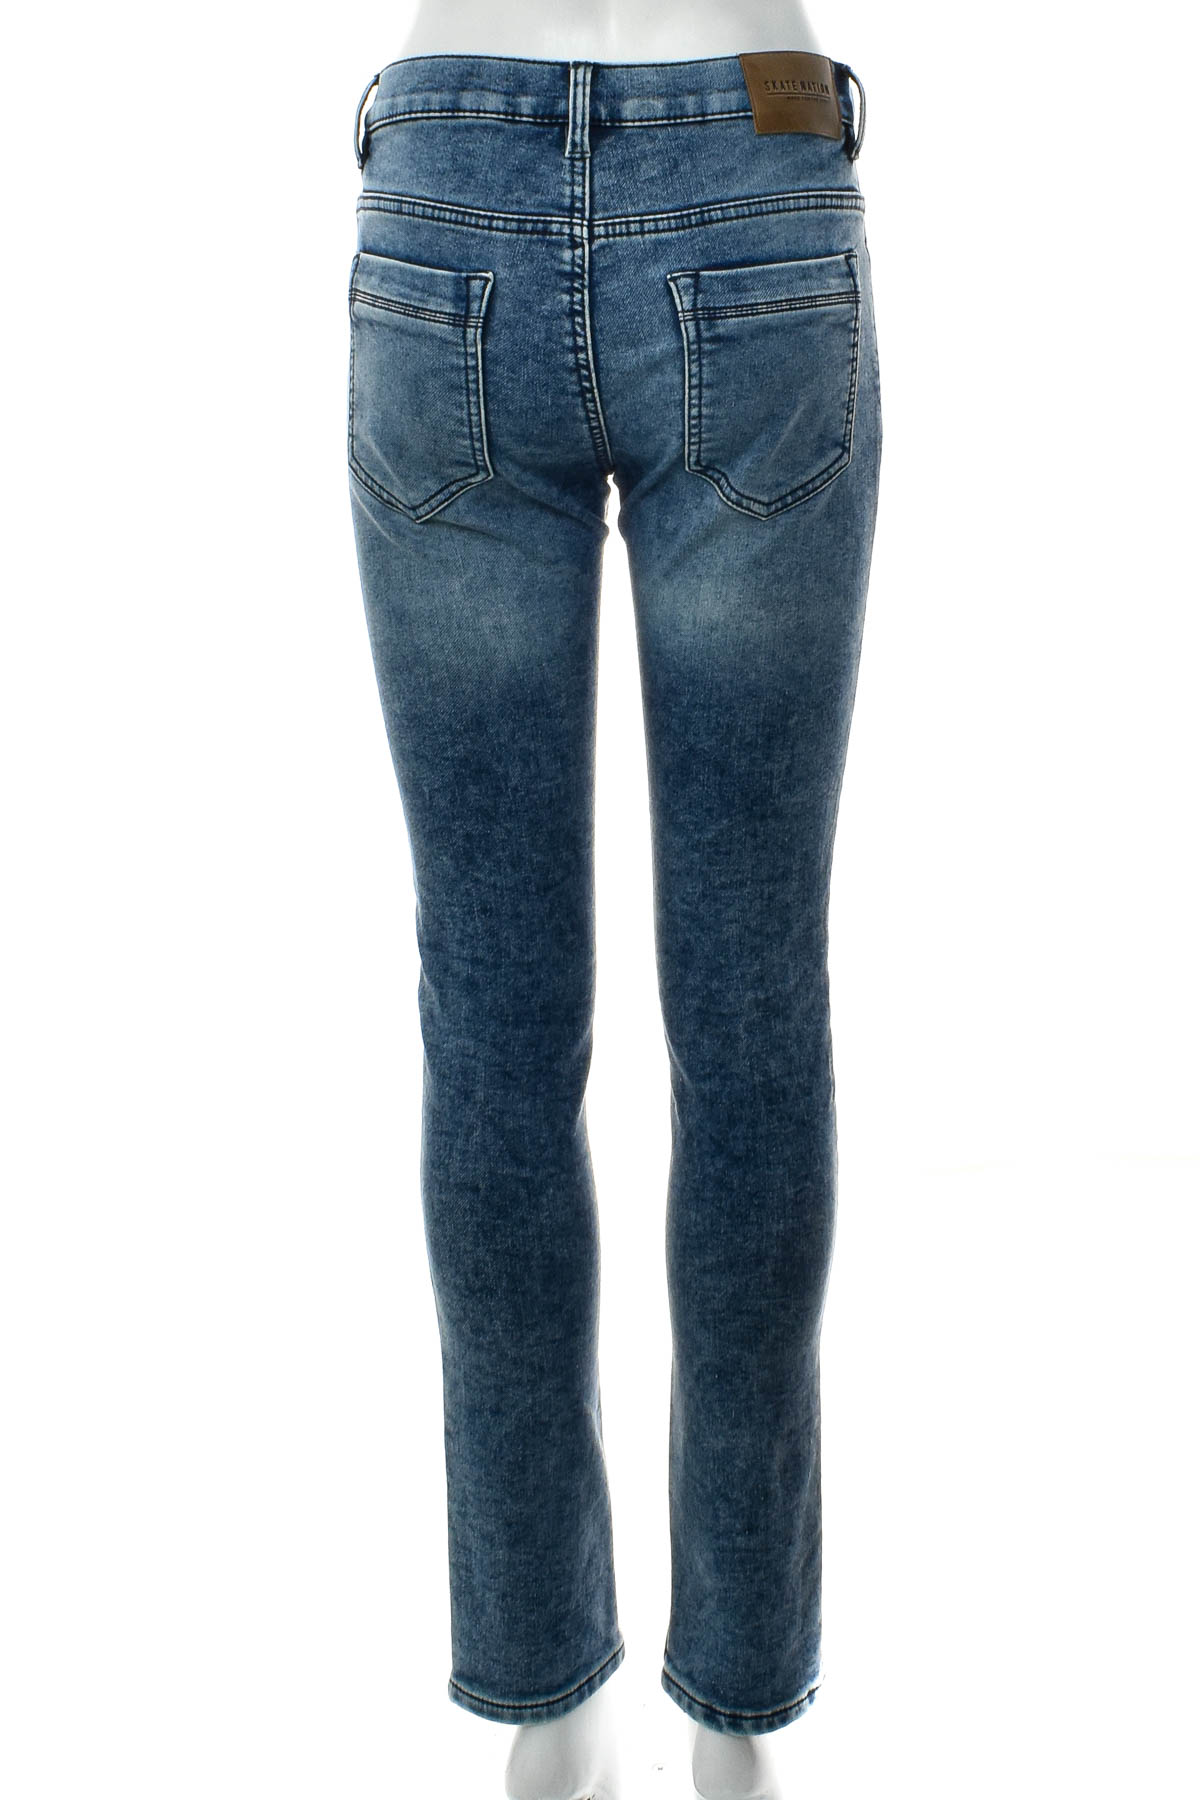 Jeans pentru fată - C&A - 1